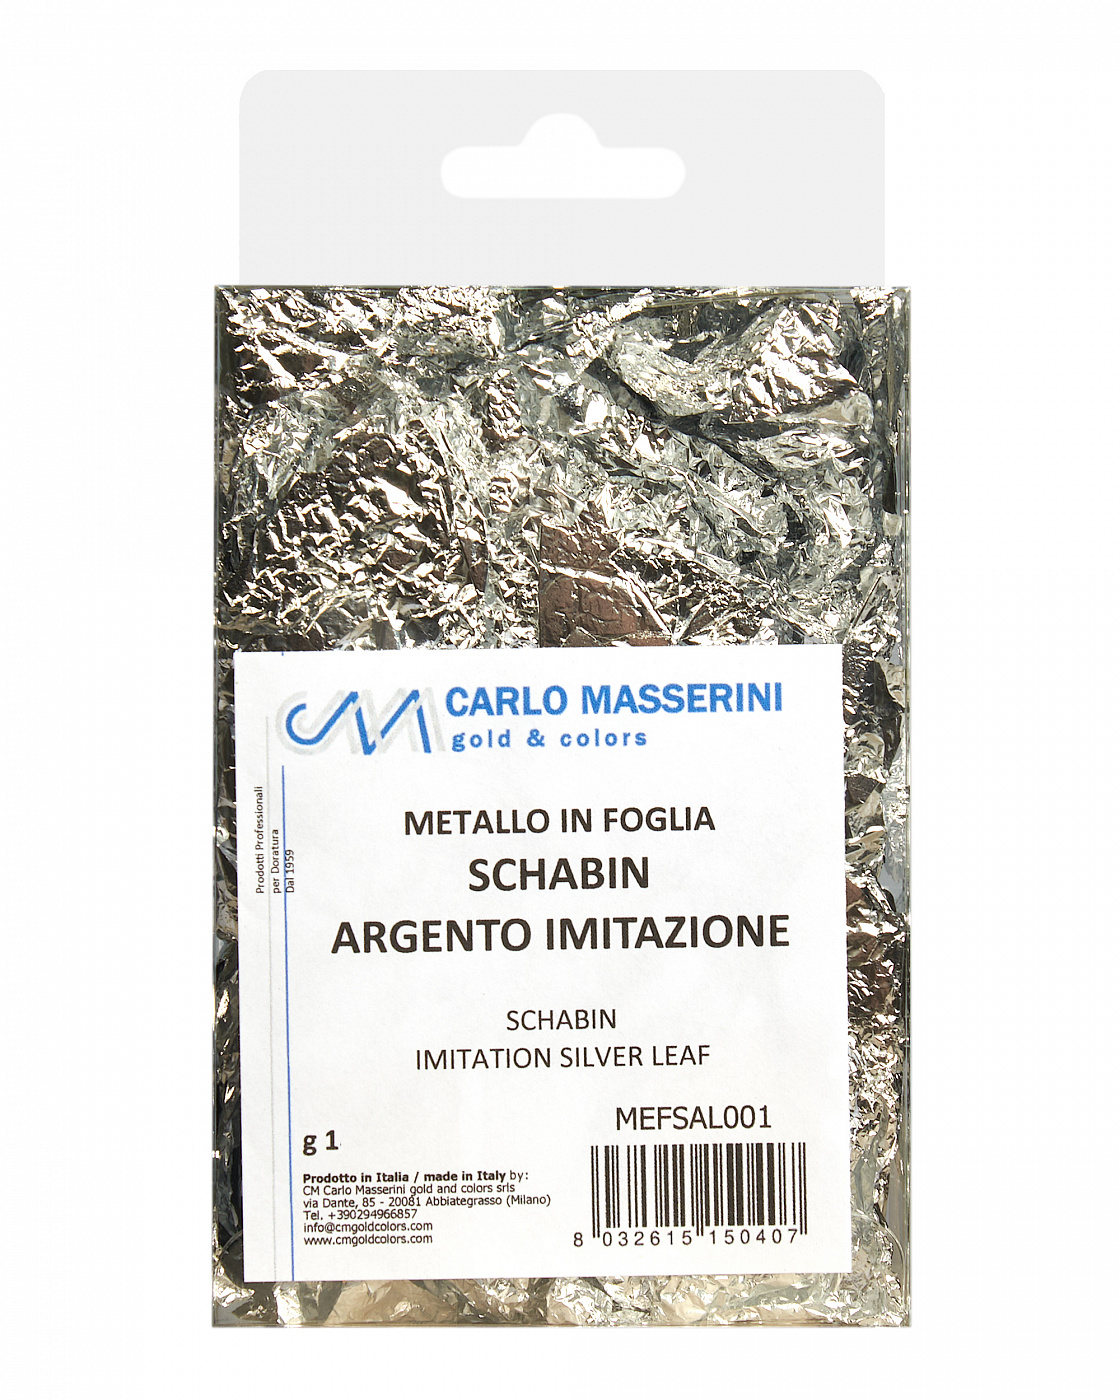 Поталь Masserini имитация серебра шабин (смятые листы) поталь masserini имитация золота крошка